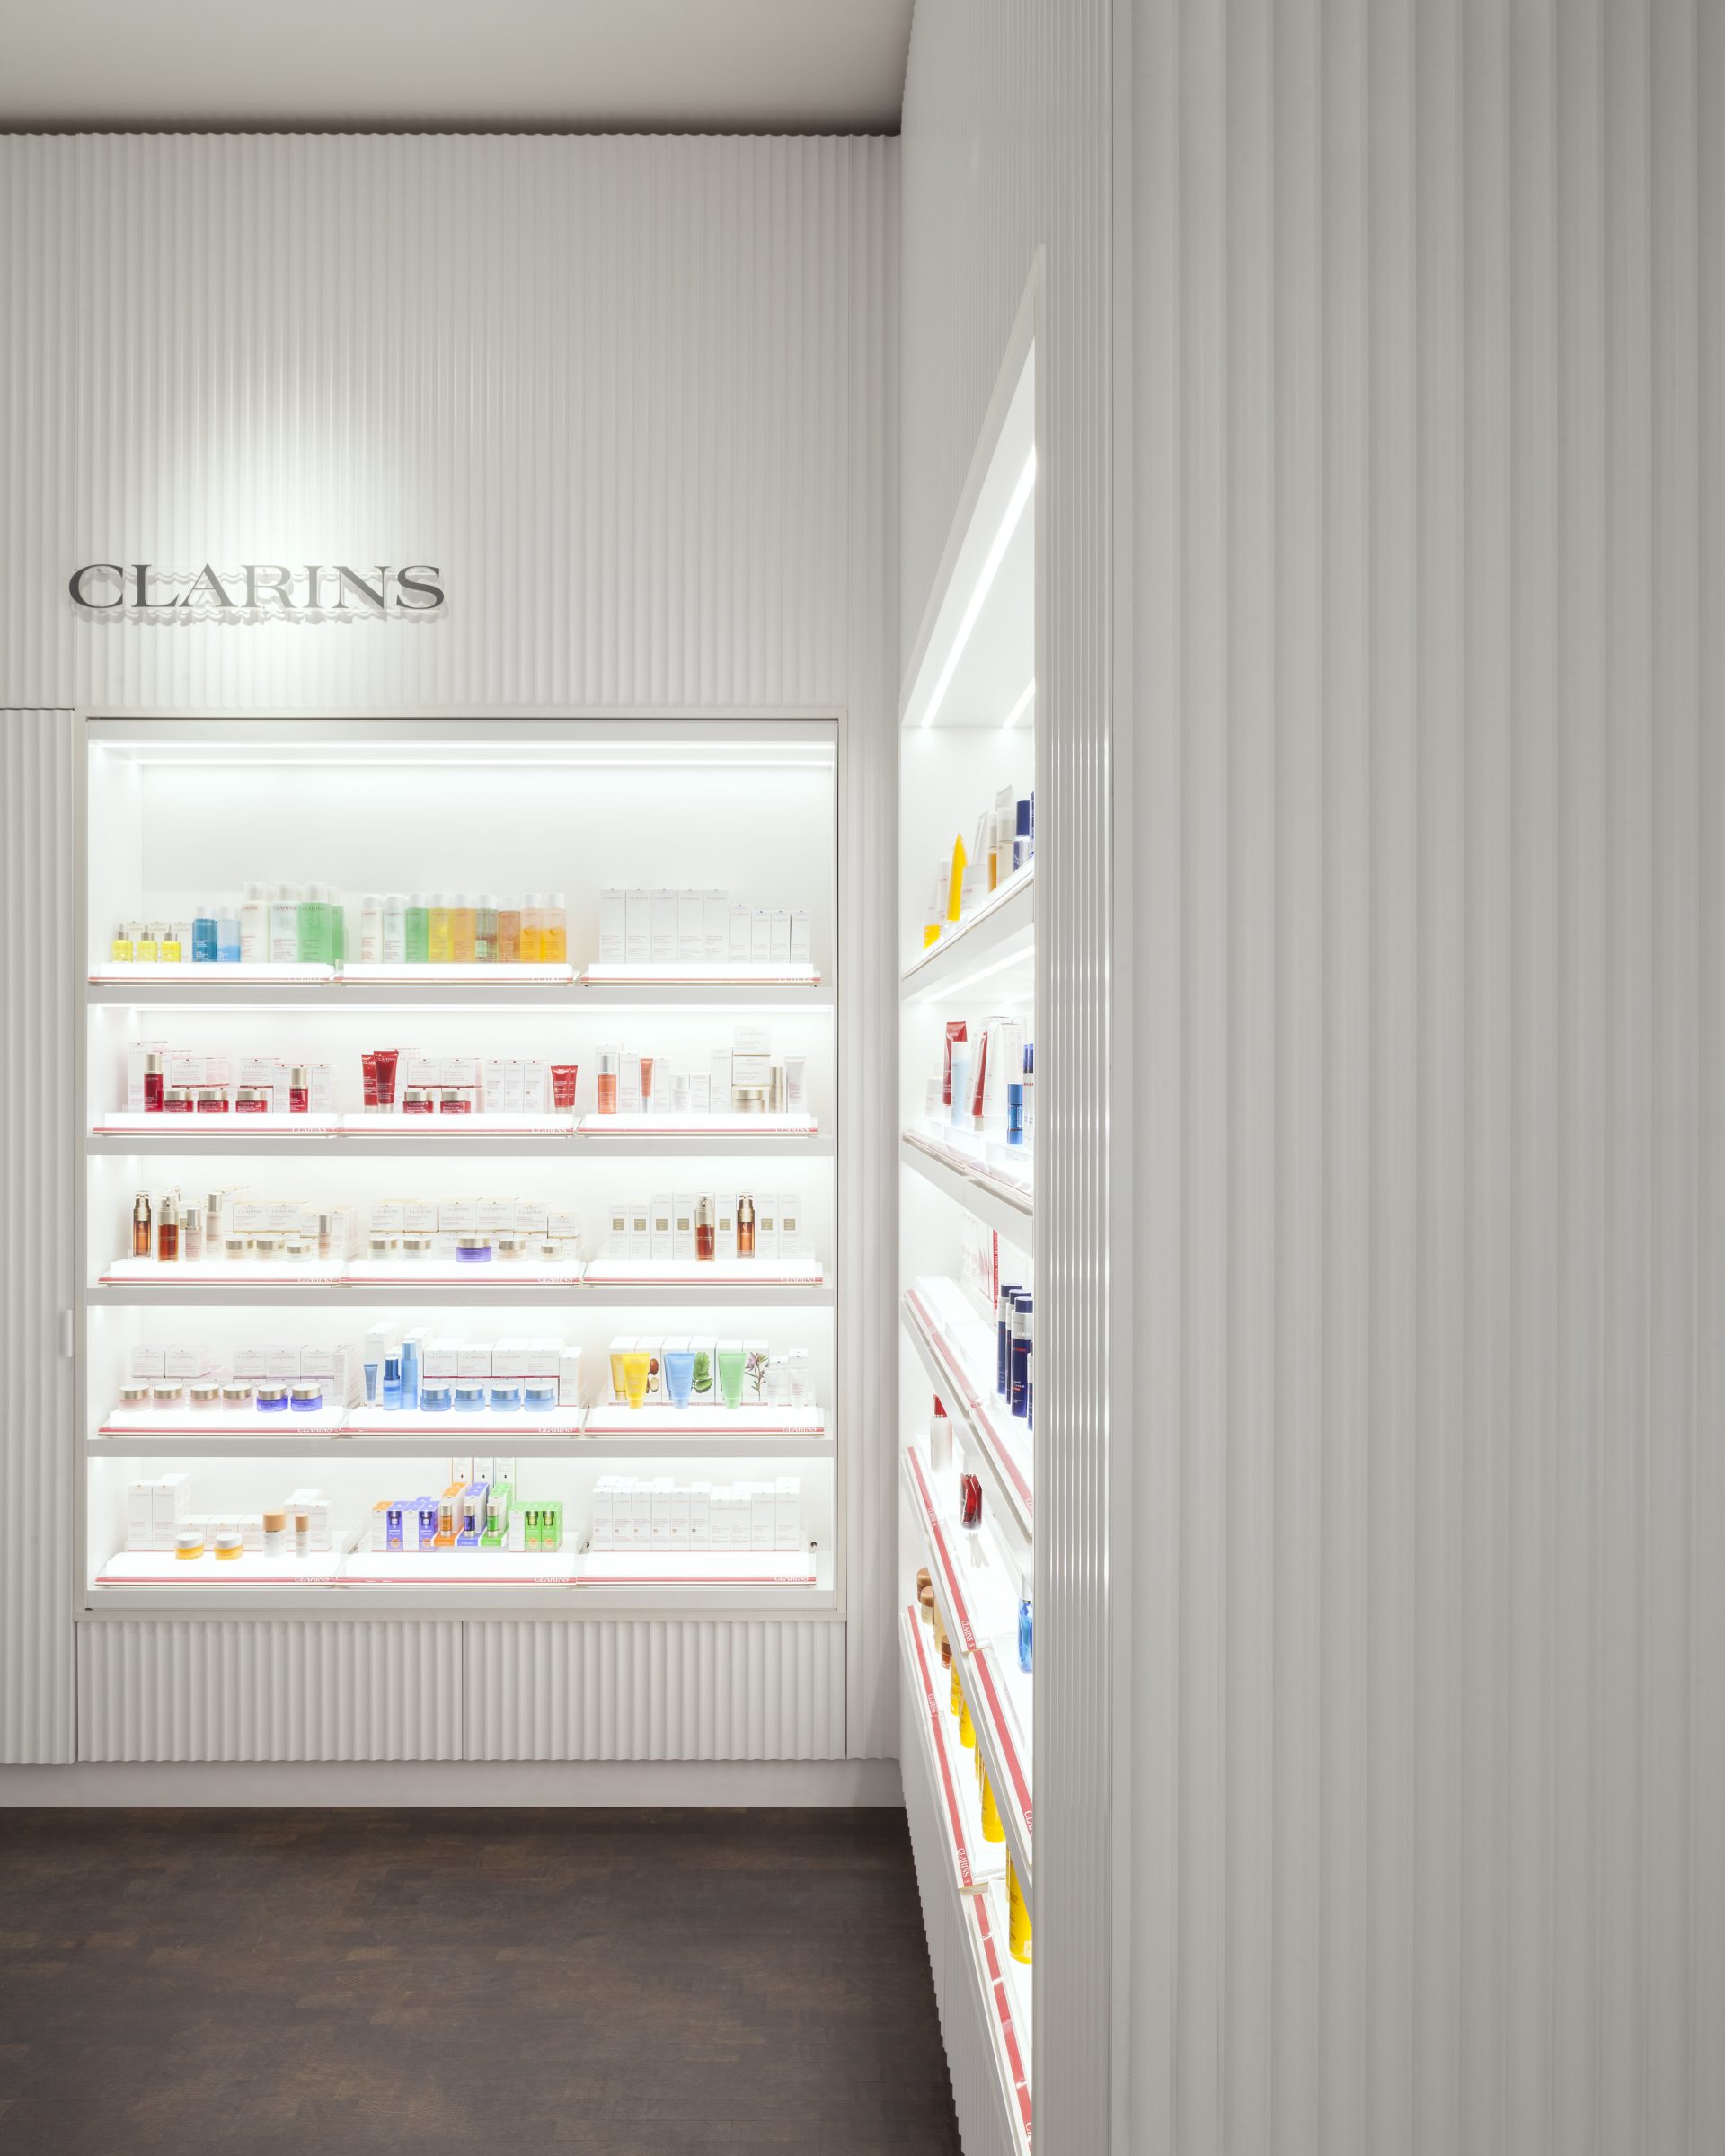 clarins retail design interior